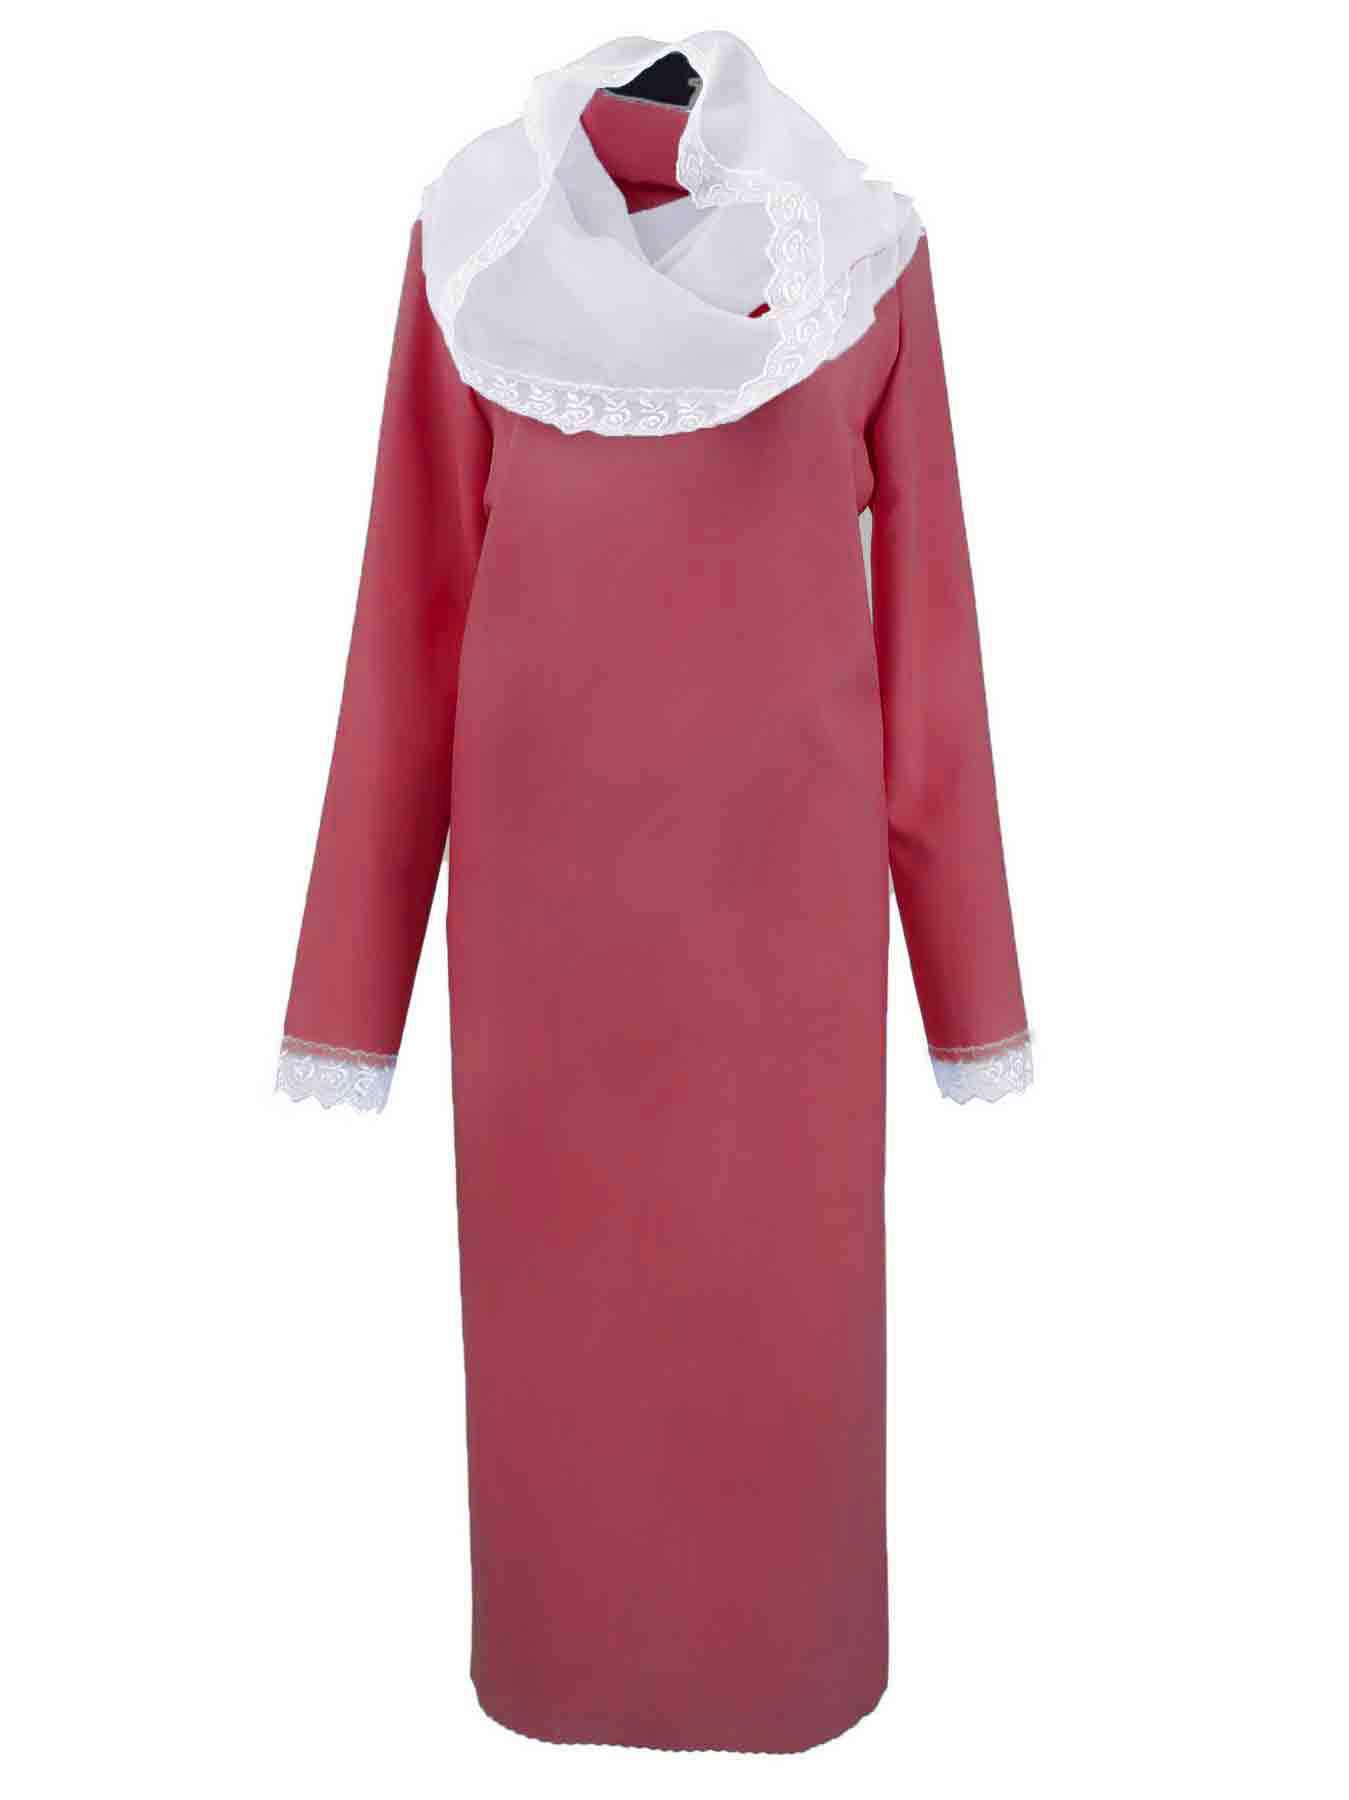 Одежда для похорон женщины. Купить Ритуальное платье с накидкой на голову.